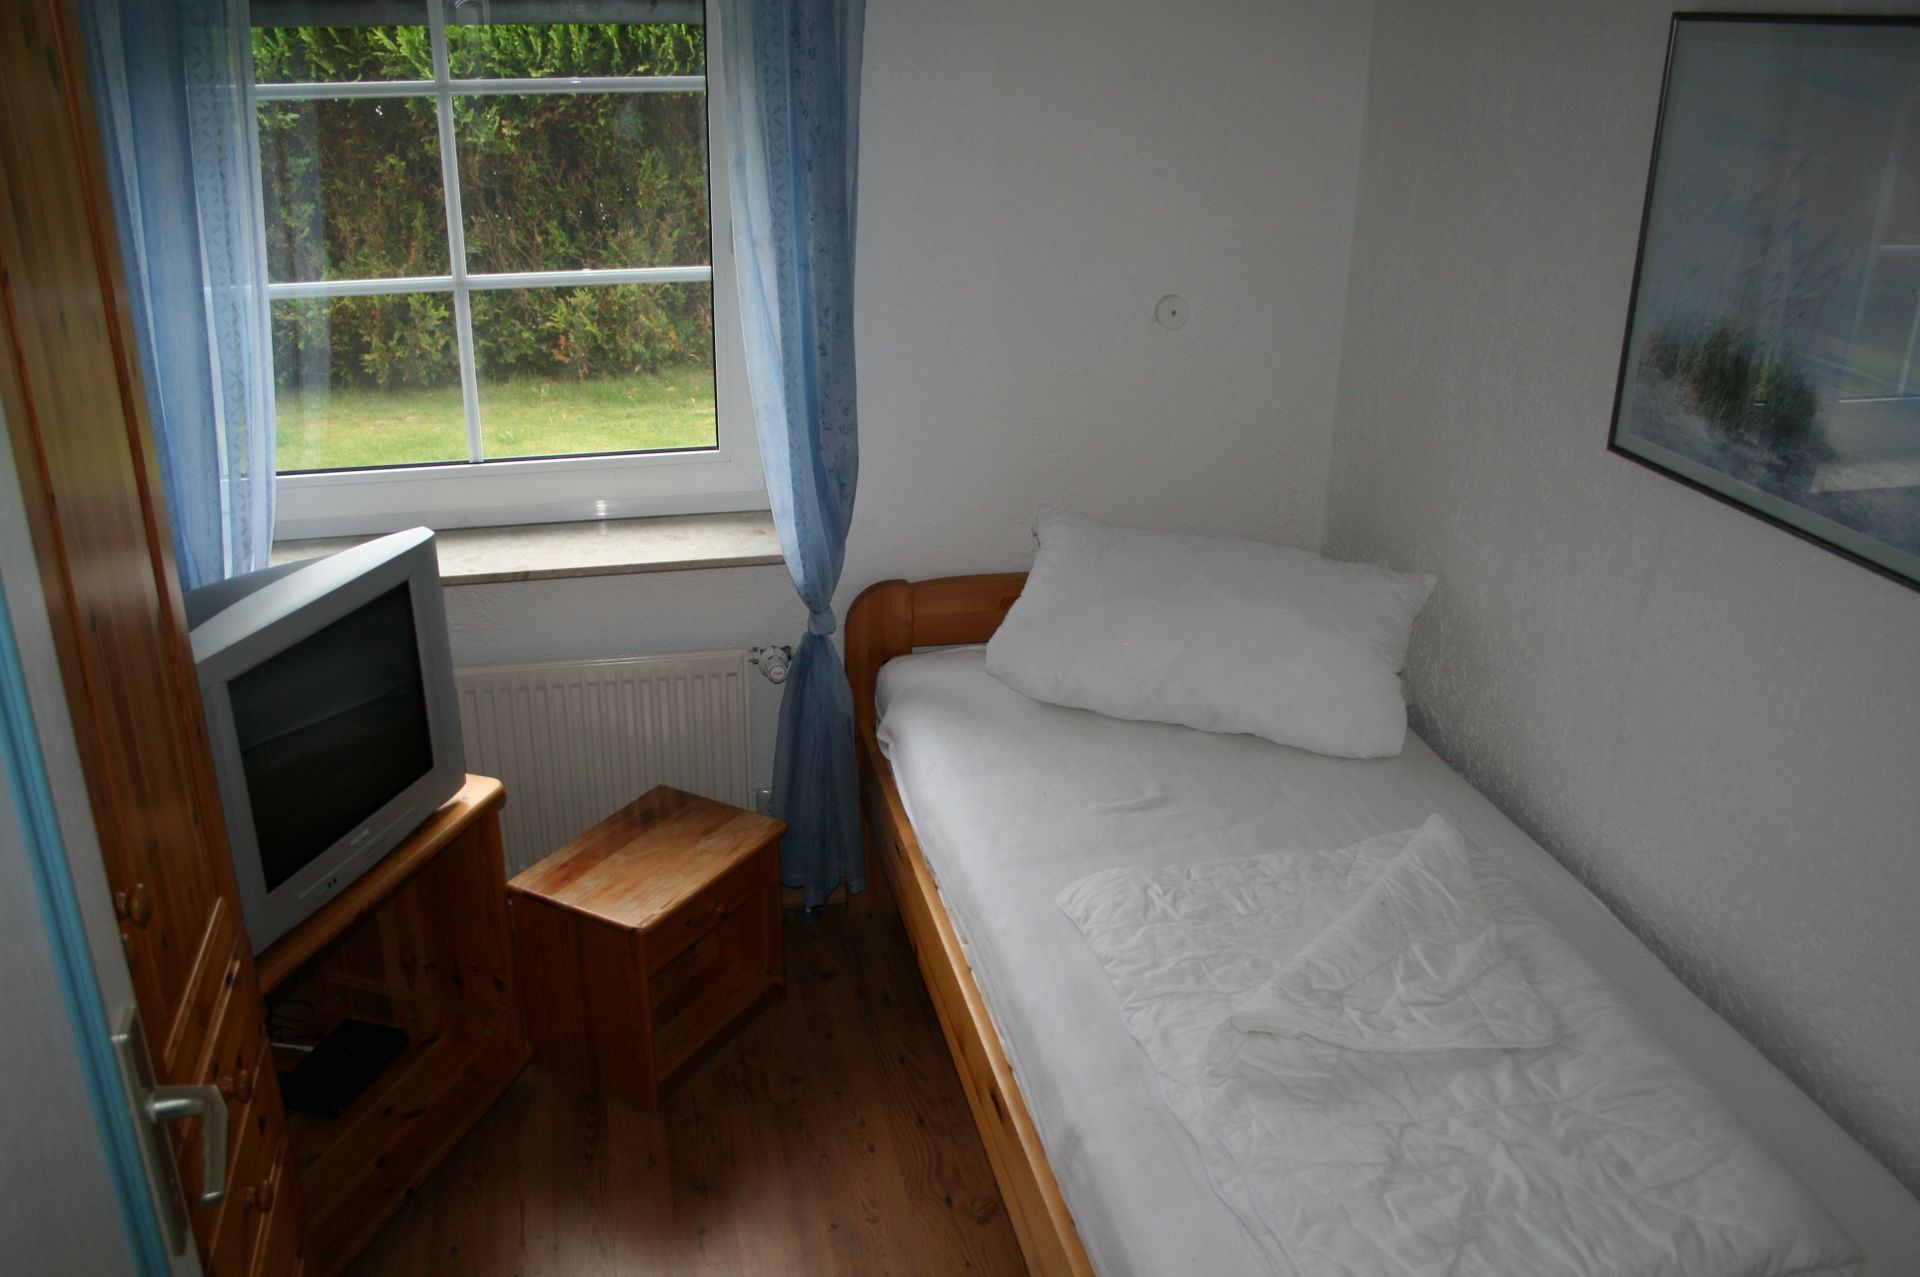 Schlafraum mit Einzelbett im Erdgeschoss Ferienhaus Norderpiep 29a Nordsee Friedrichskoog